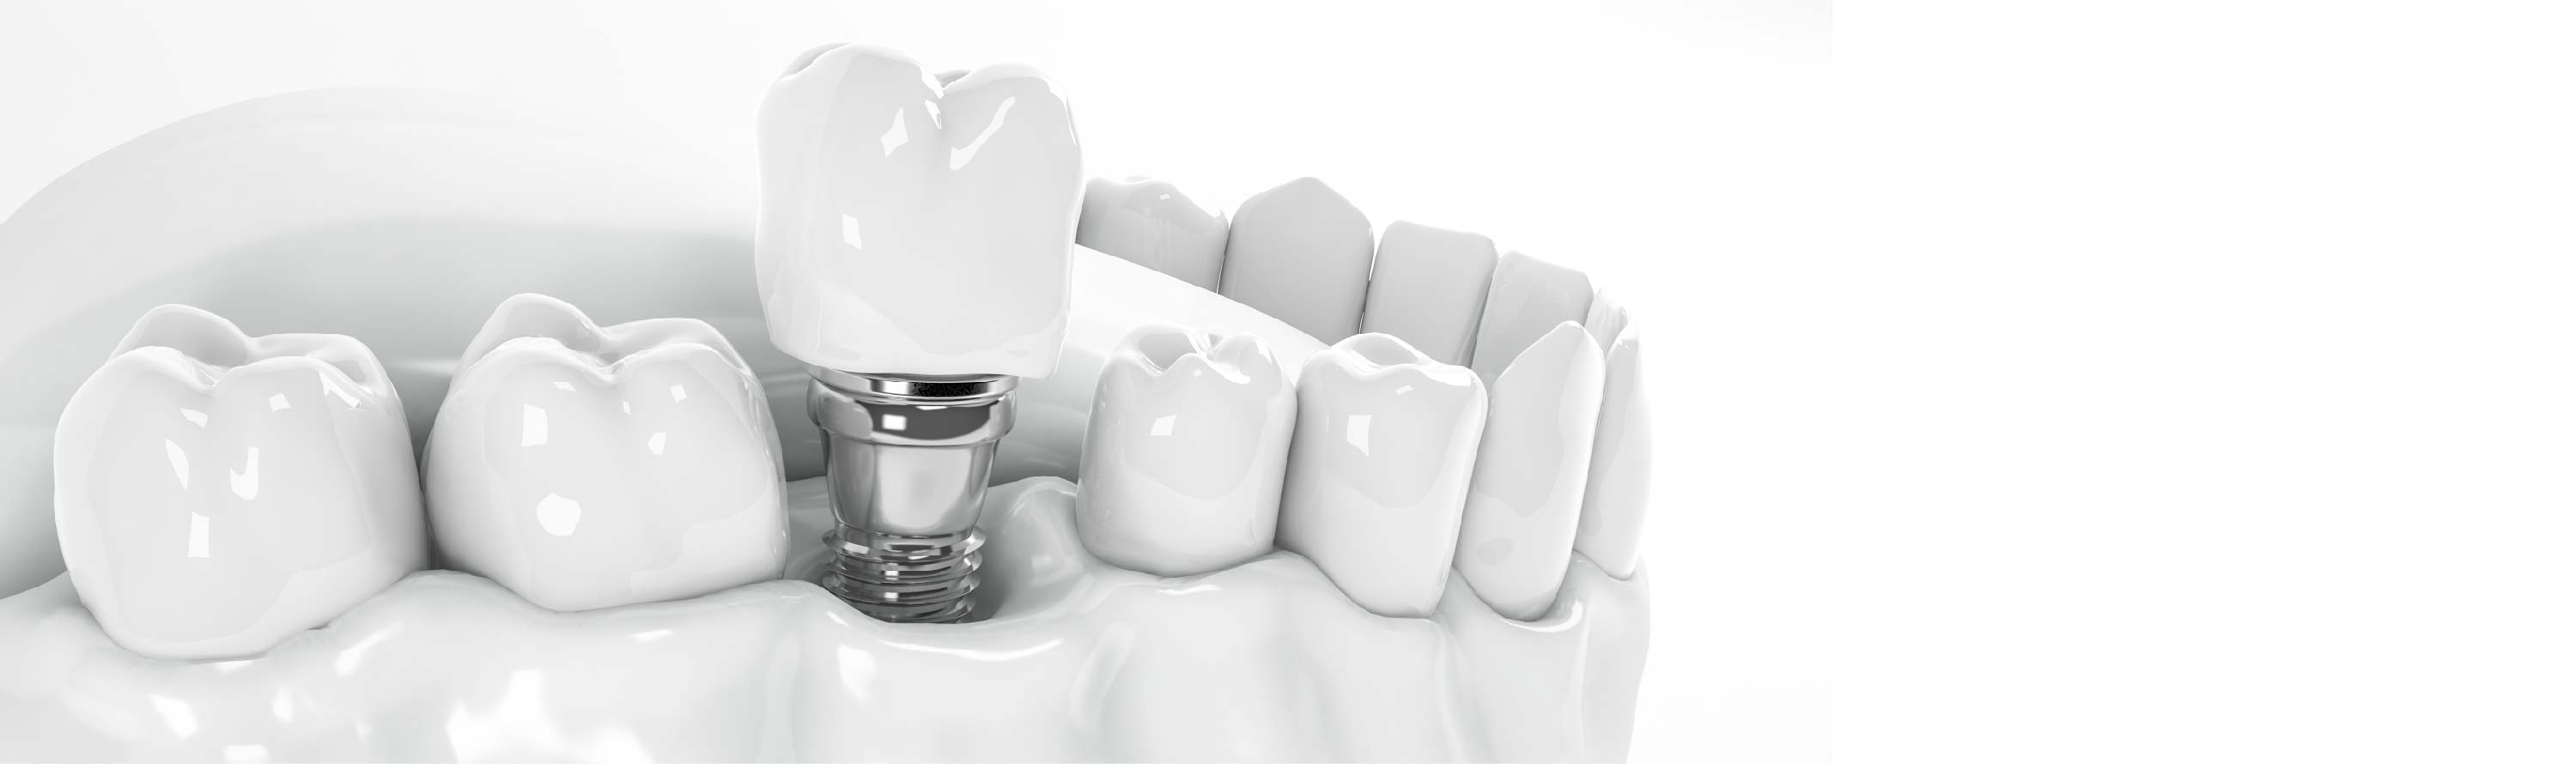 Implantes dentales proceso